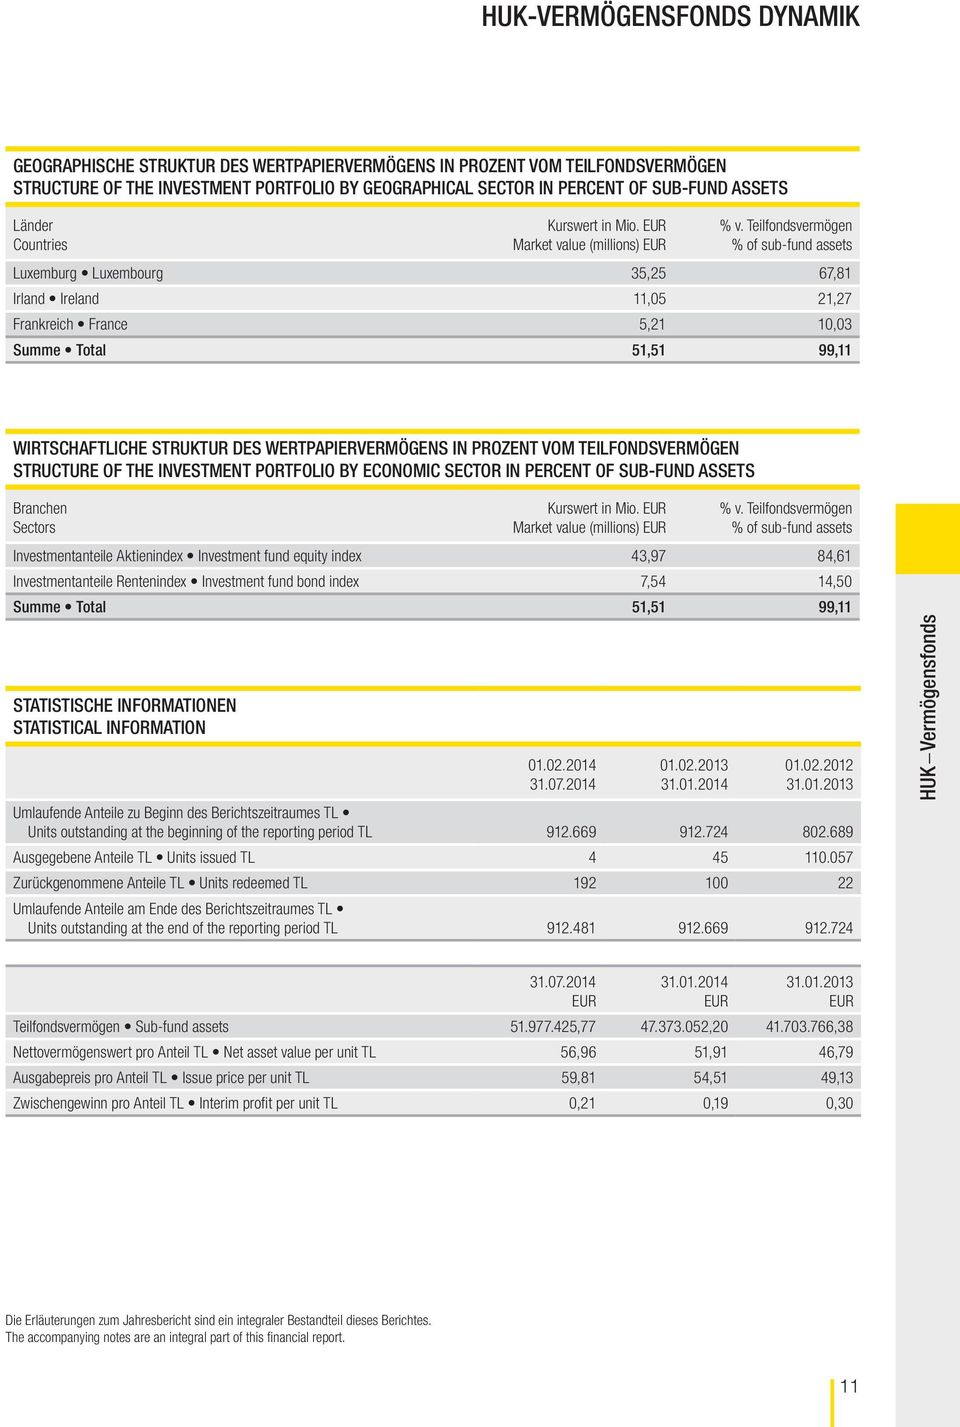 Teilfondsvermögen % of sub fund assets Luxemburg Luxembourg 35,25 67,81 Irland Ireland 11,05 21,27 Frankreich France 5,21 10,03 Summe Total 51,51 99,11 WIRTSCHAFTLICHE STRUKTUR DES